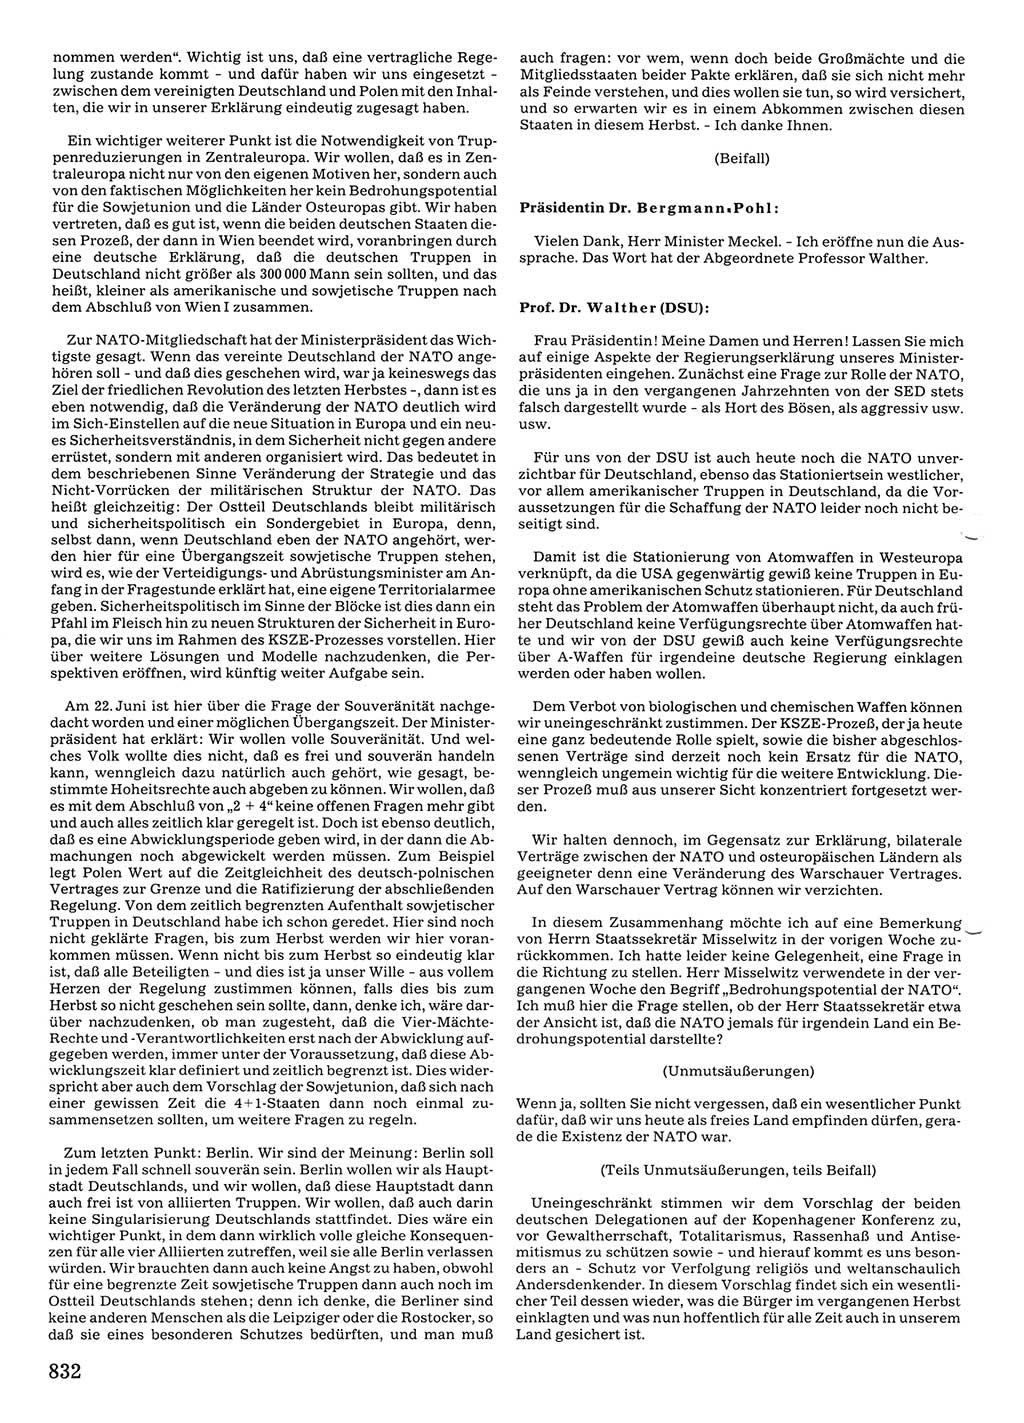 Tagungen der Volkskammer (VK) der Deutschen Demokratischen Republik (DDR), 10. Wahlperiode 1990, Seite 832 (VK. DDR 10. WP. 1990, Prot. Tg. 1-38, 5.4.-2.10.1990, S. 832)